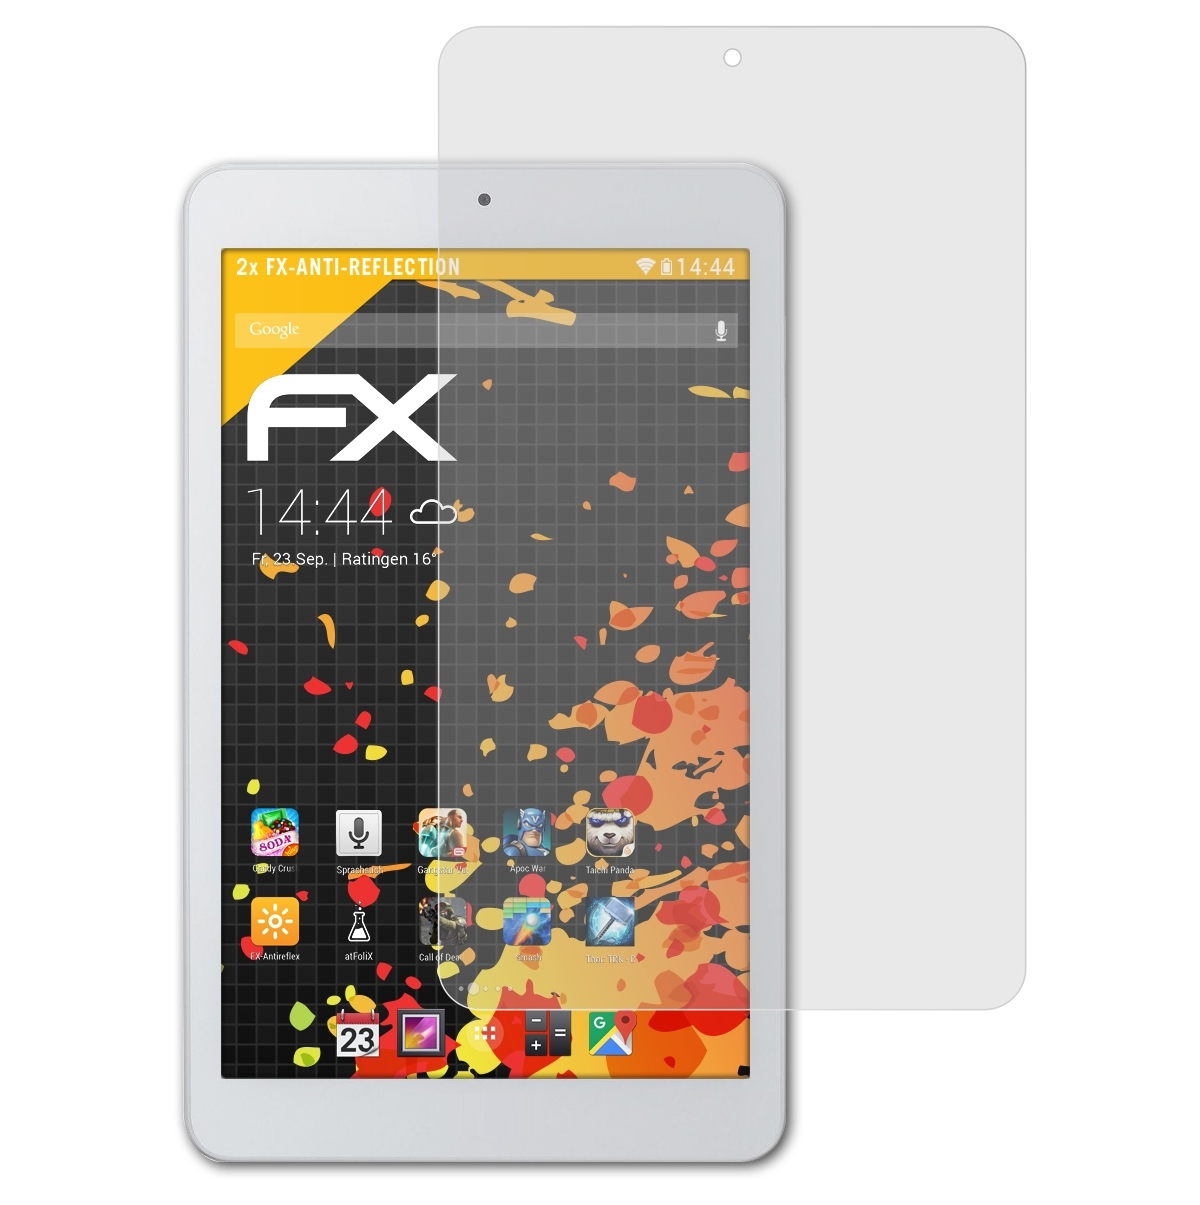 Displayschutz(für One (B1-860)) Acer 2x ATFOLIX Iconia FX-Antireflex 8